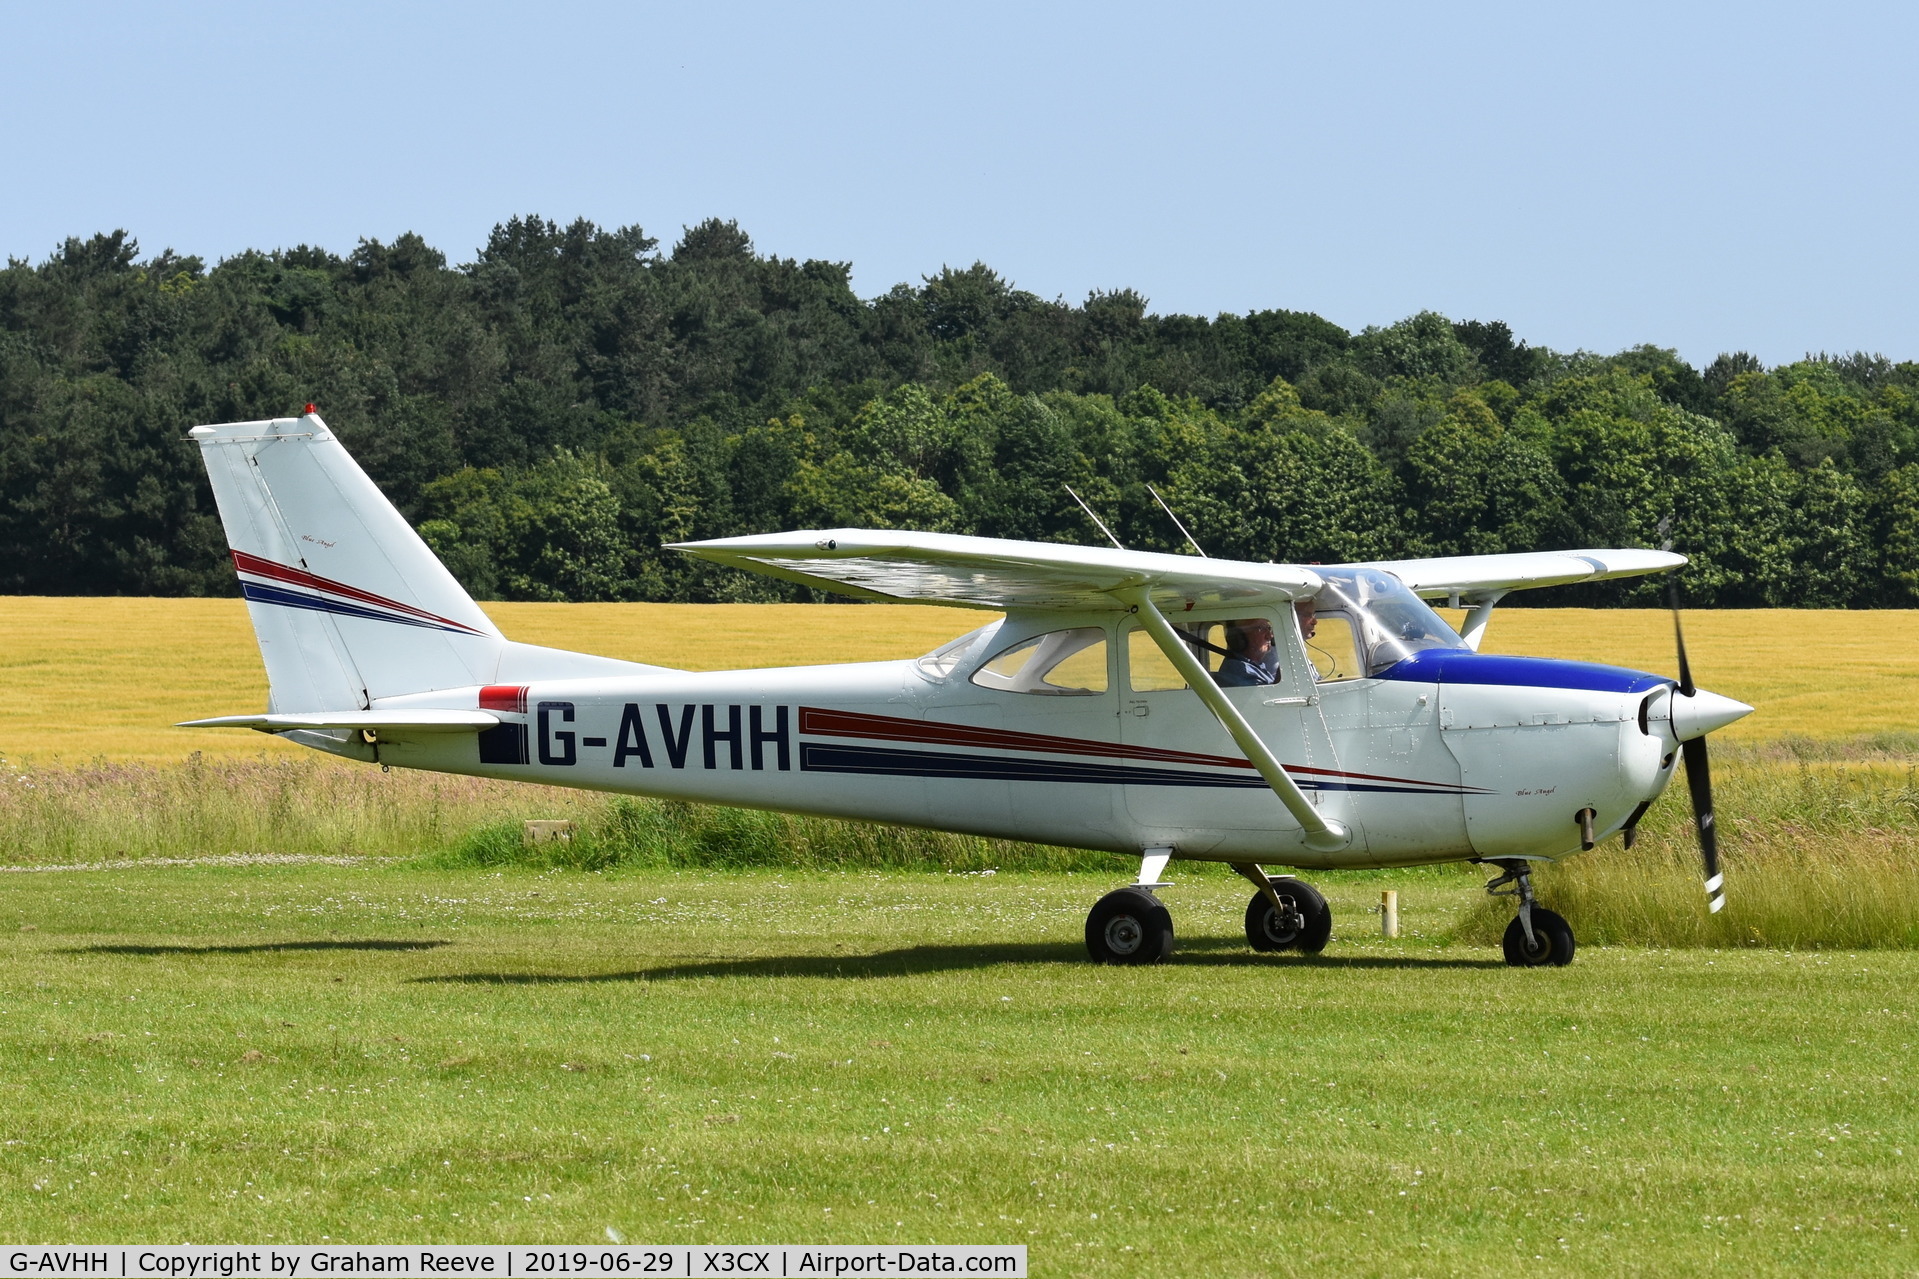 G-AVHH, 1967 Reims F172H Skyhawk C/N 0337, Just landed at Northrepps.